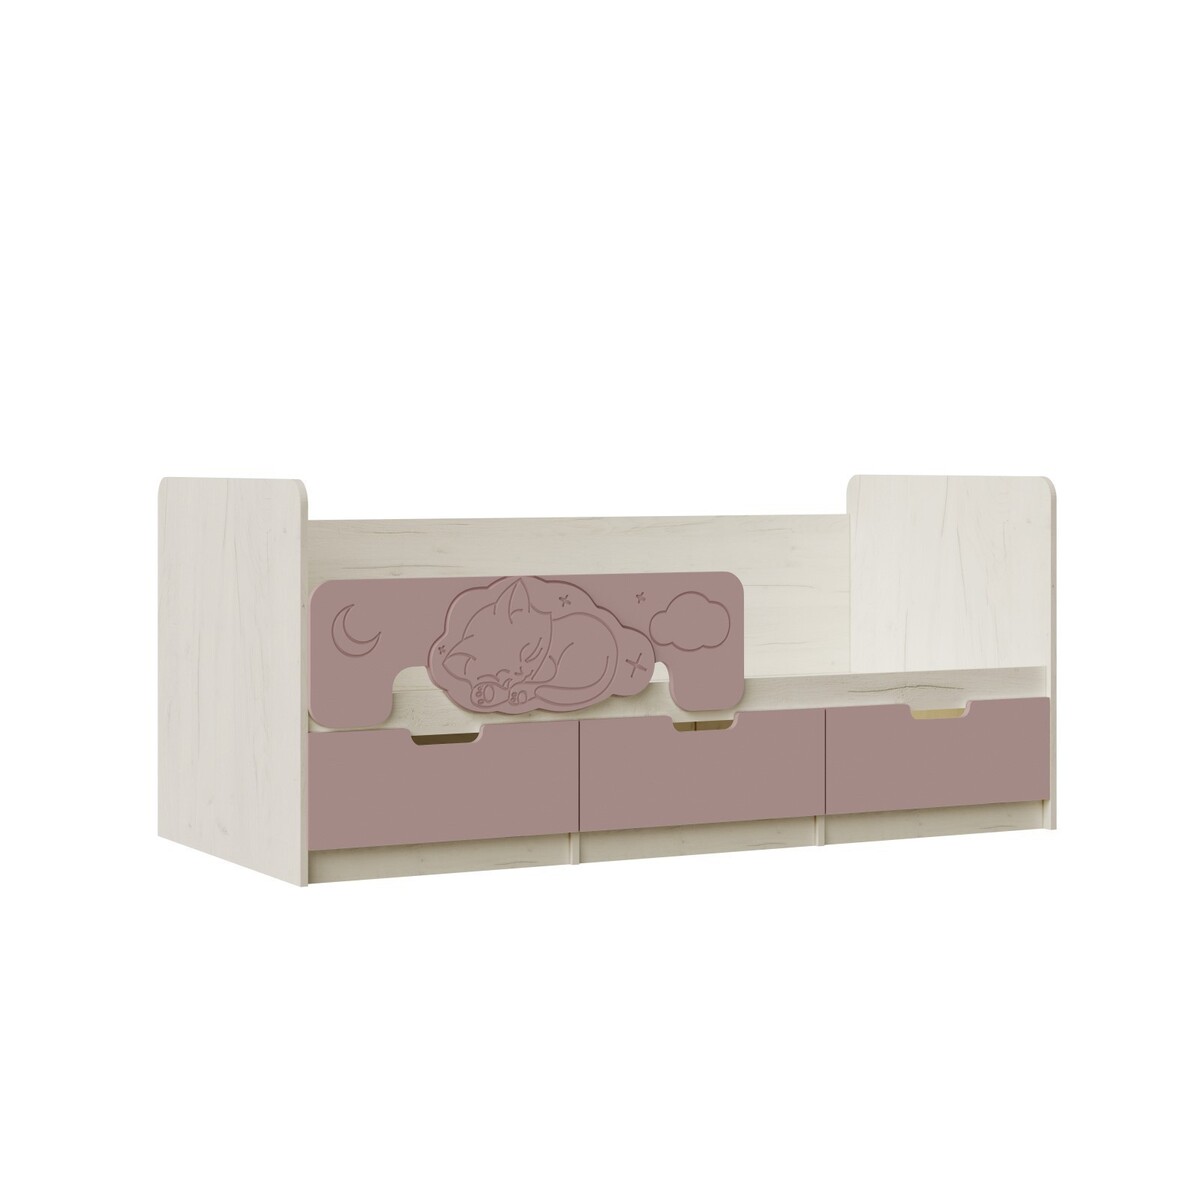 Кровать юниор-4, с/м 1600х800, 1636х850х800, шарли розовый/дуб крафт белый кровать сказка с подъемным мех с м 2000х900 белый